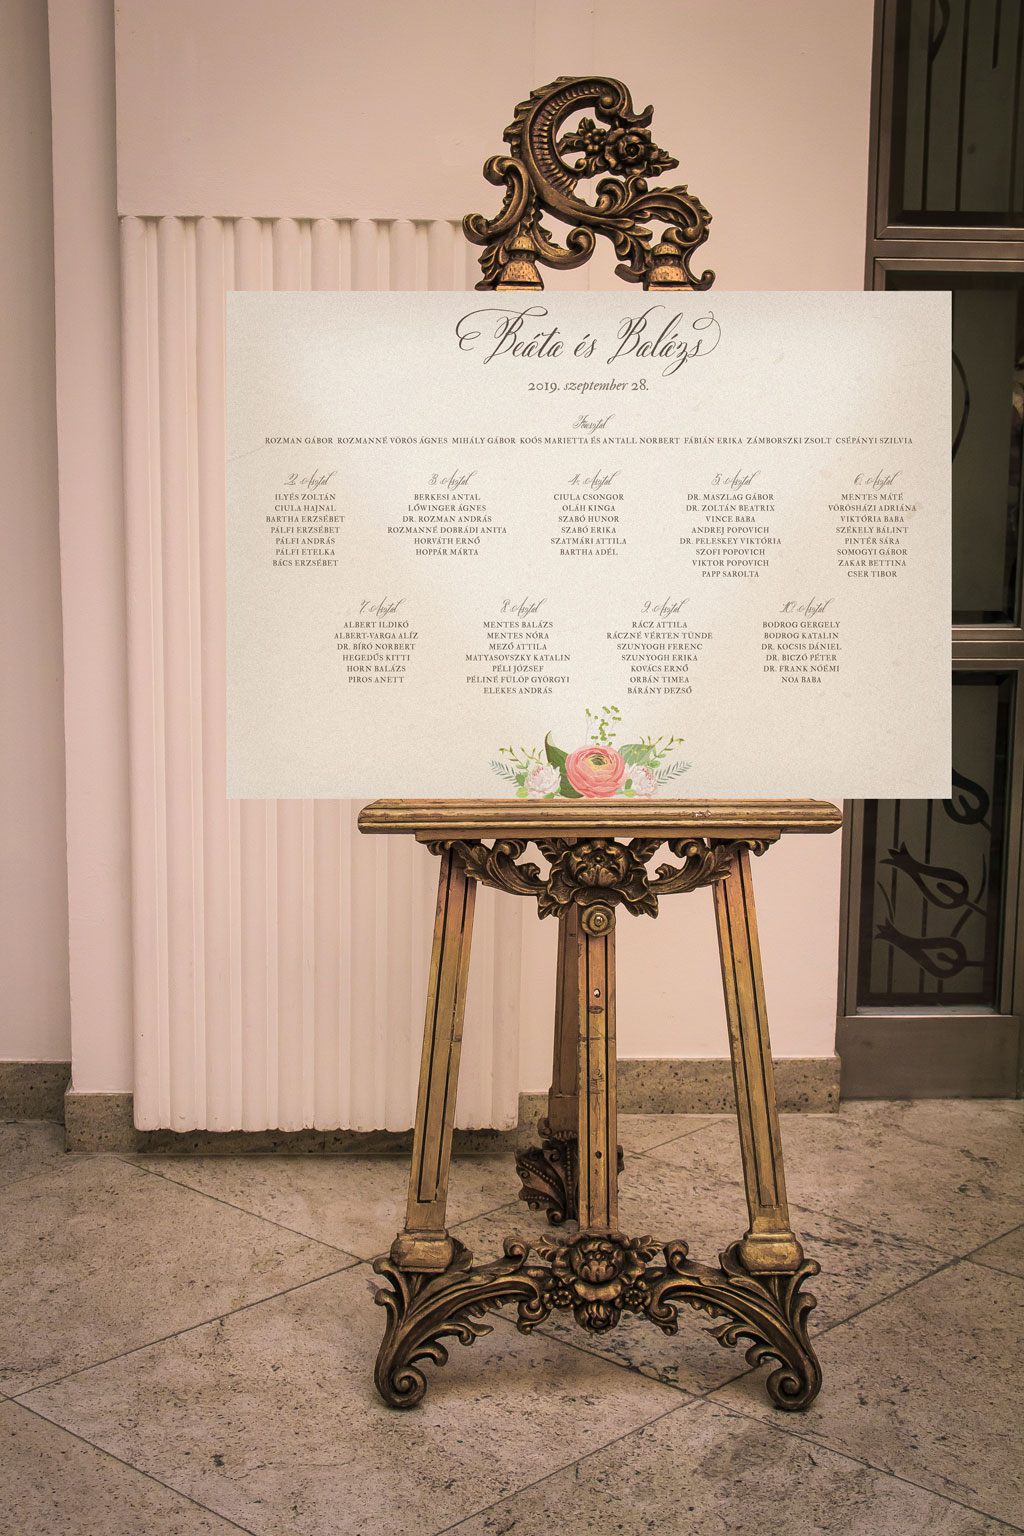 Ültetési tábla asztalonként virágos fehér grafikával három szabvány méretben 30-150 vendégszámig, karton lemezre kasírozva, gyorsan, jó áron